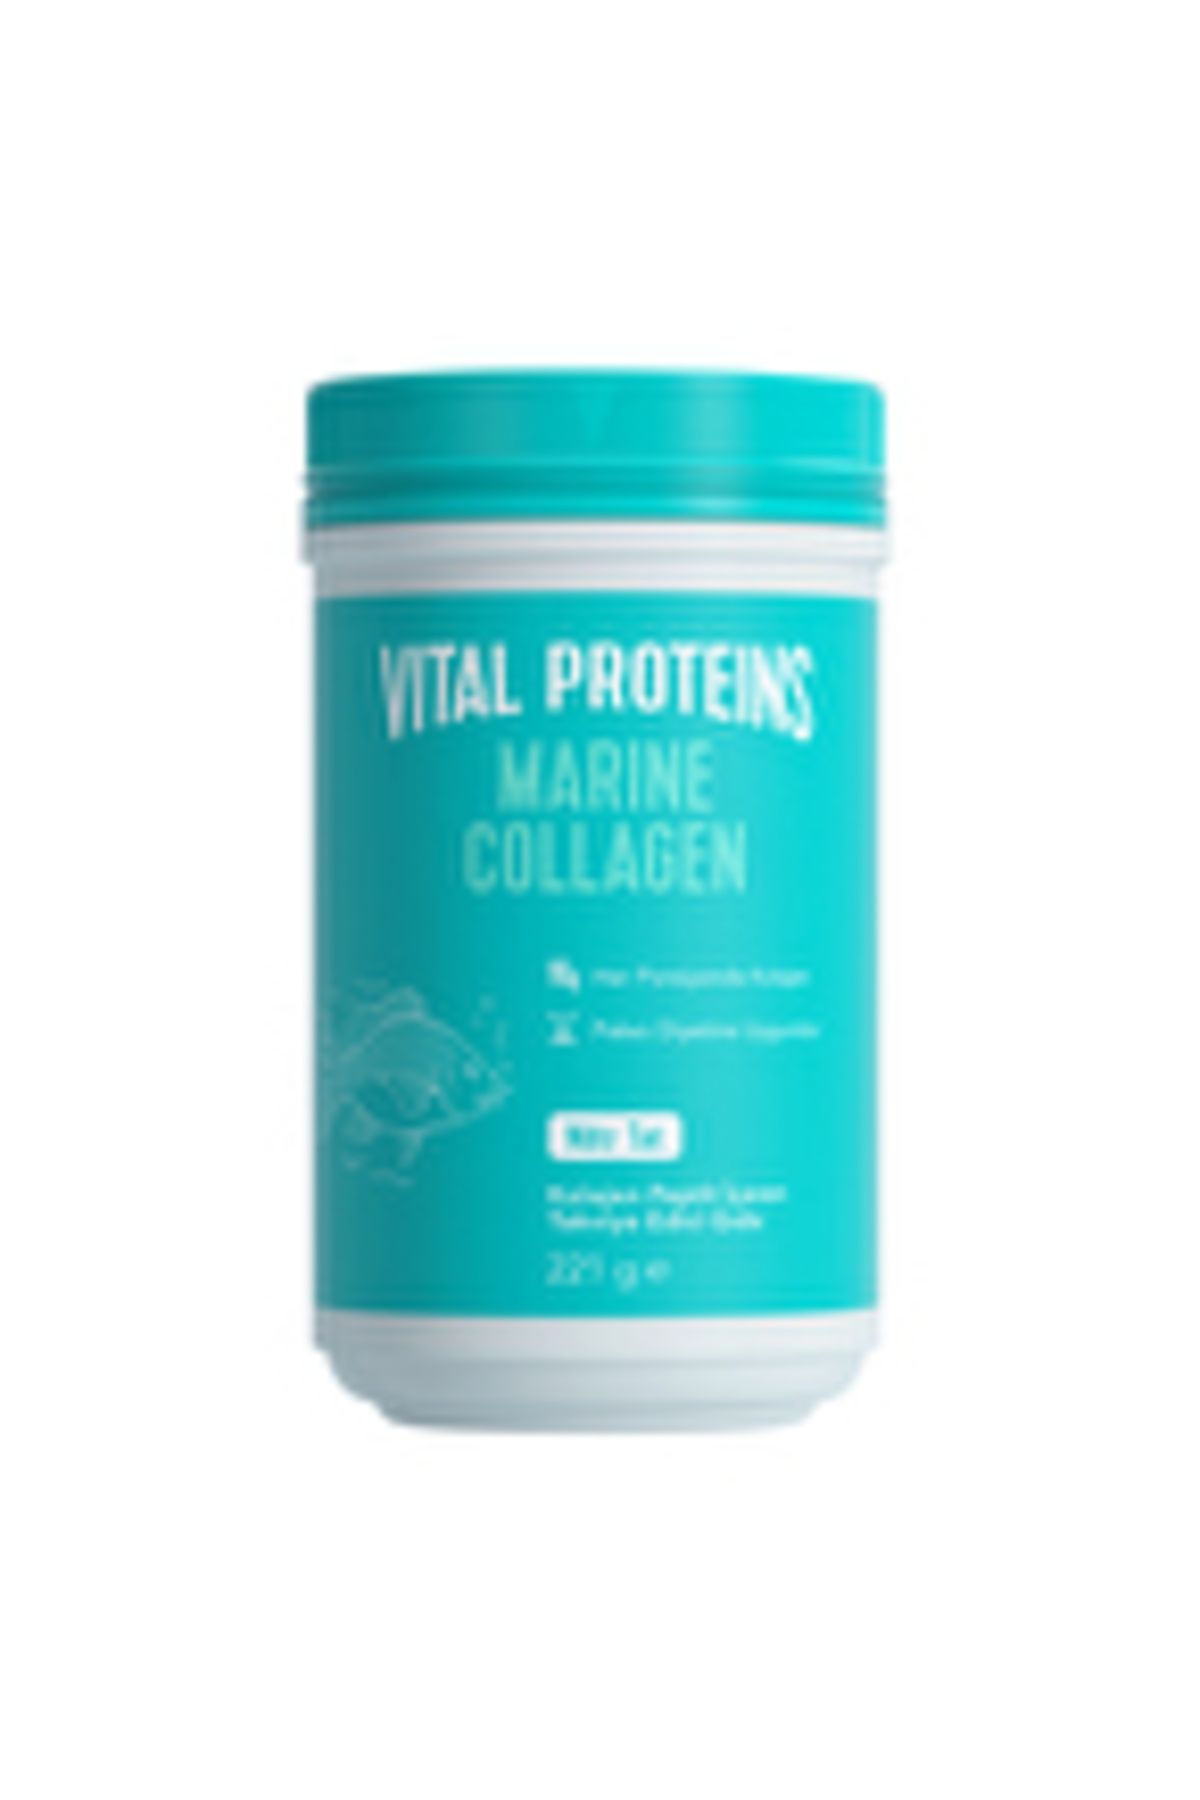 Vital Proteins Marine Collagen 221 Gr Nötr Tat ( 1 ADET )